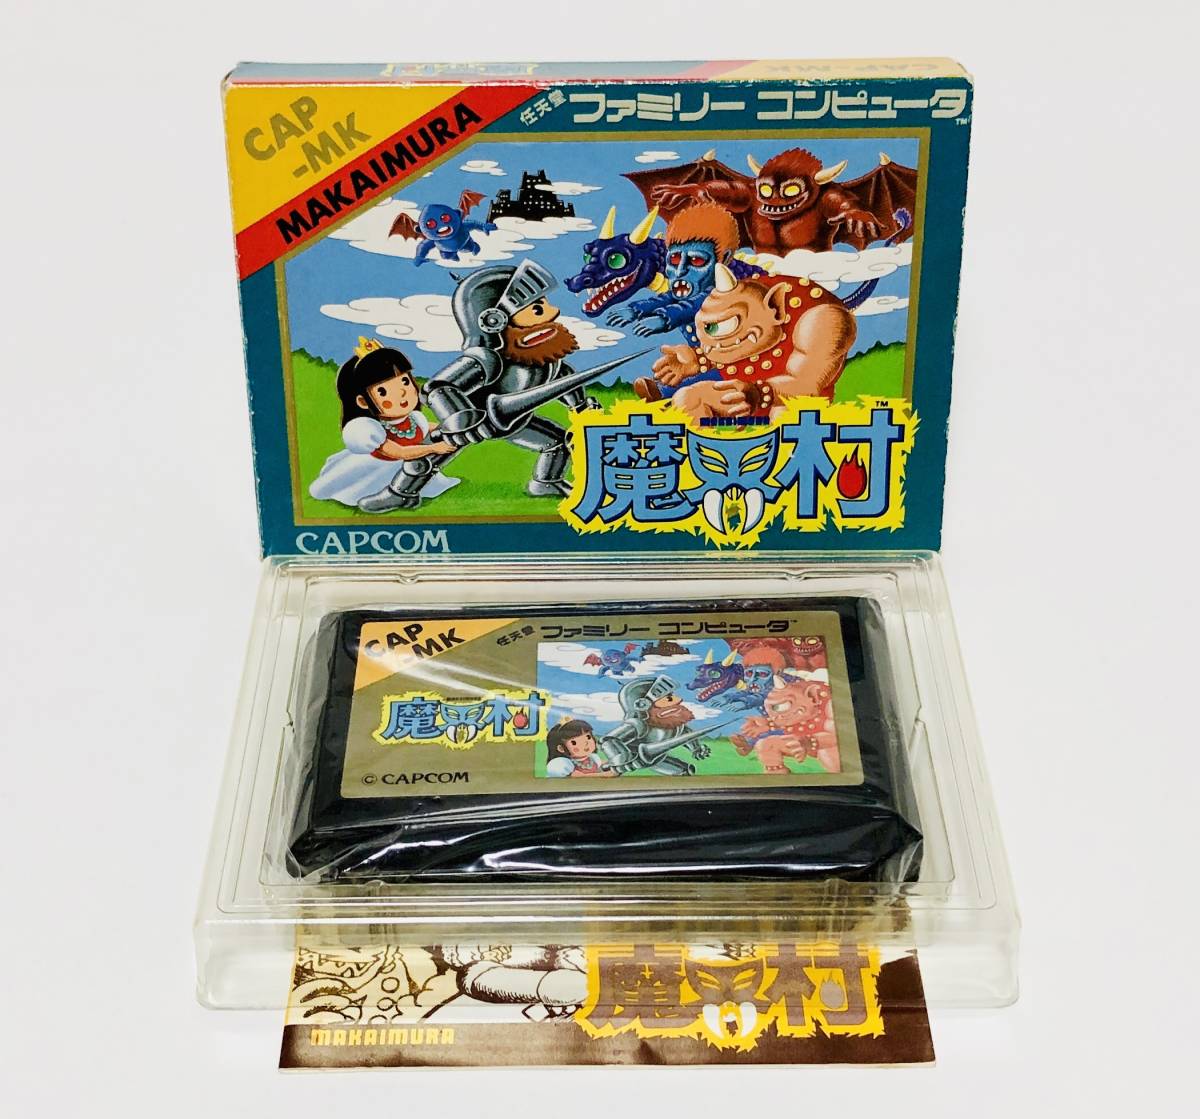 【送料無料】 ファミコン 魔界村 箱説付き 痛みあり カプコン レトロゲーム Nintendo Famicom Makaimura CIB Capcom_画像1